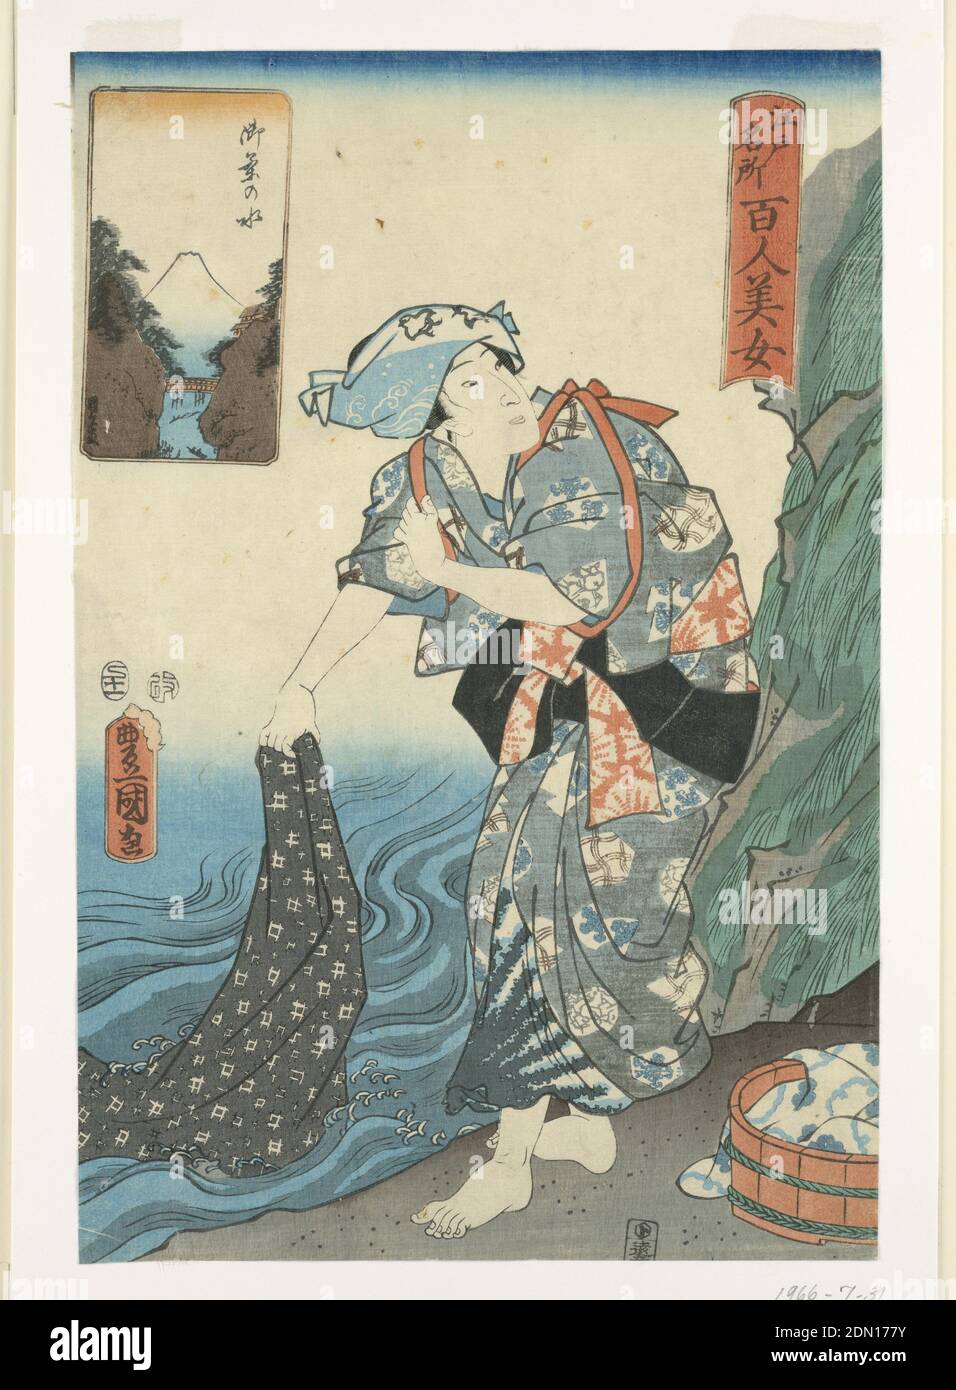 Frau waschen Stoff in einem Strom, Utagawa Kunisada, Japanisch, 1786 – 1864, Woodblock-Druck in farbiger Tinte auf Papier, dieser Handwerker, in verschiedenen Designs dekoriert, spült ein Textil im Wasser. Während ihre Kleidungsstücke hauptsächlich mit Shibori- und Bingata-Techniken entworfen wurden, wurde Katazome zur Erstellung des abstrakten karierten Drucks eingesetzt. Hinter ihr ist ein weiterer Stoff, der zwei Indigoblau-Töne enthält. Eine Karikatur oben links zeigt ein klares Bild des Großen Fuji., Japan, 1857, Theater, Print Stockfoto